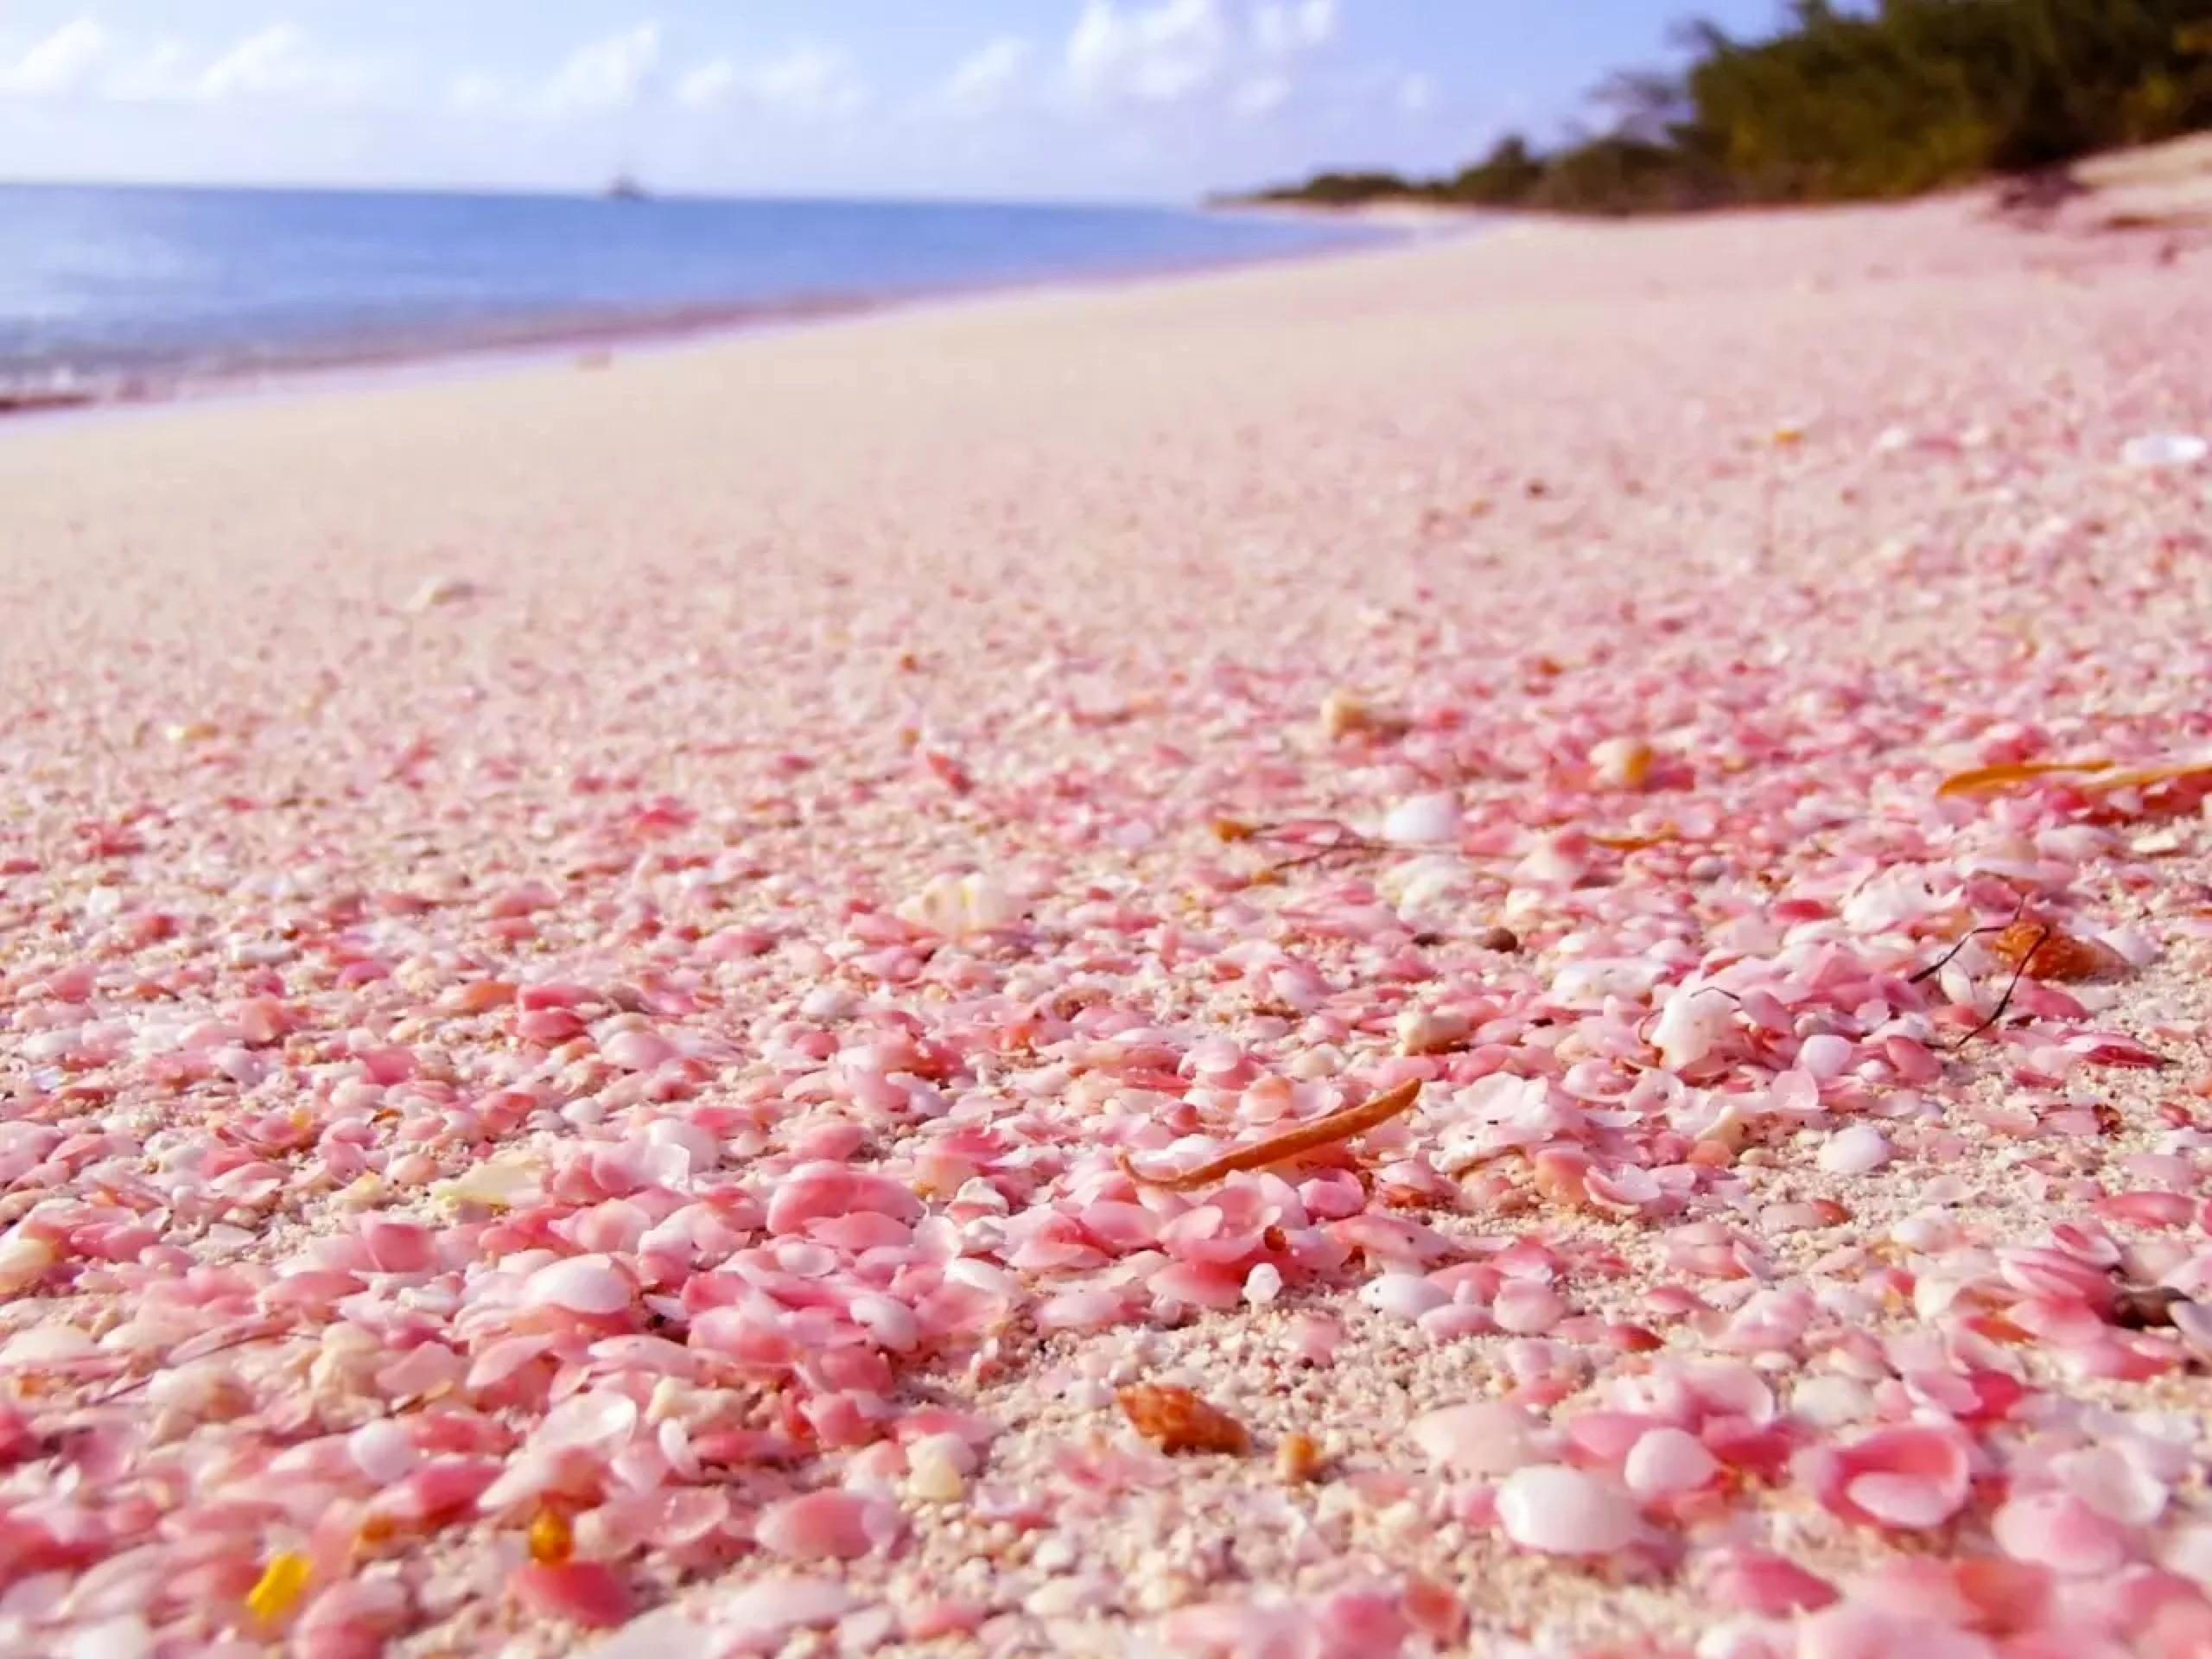 少女心炸裂,这些粉色沙滩你看过没?_图片新闻_东方头条